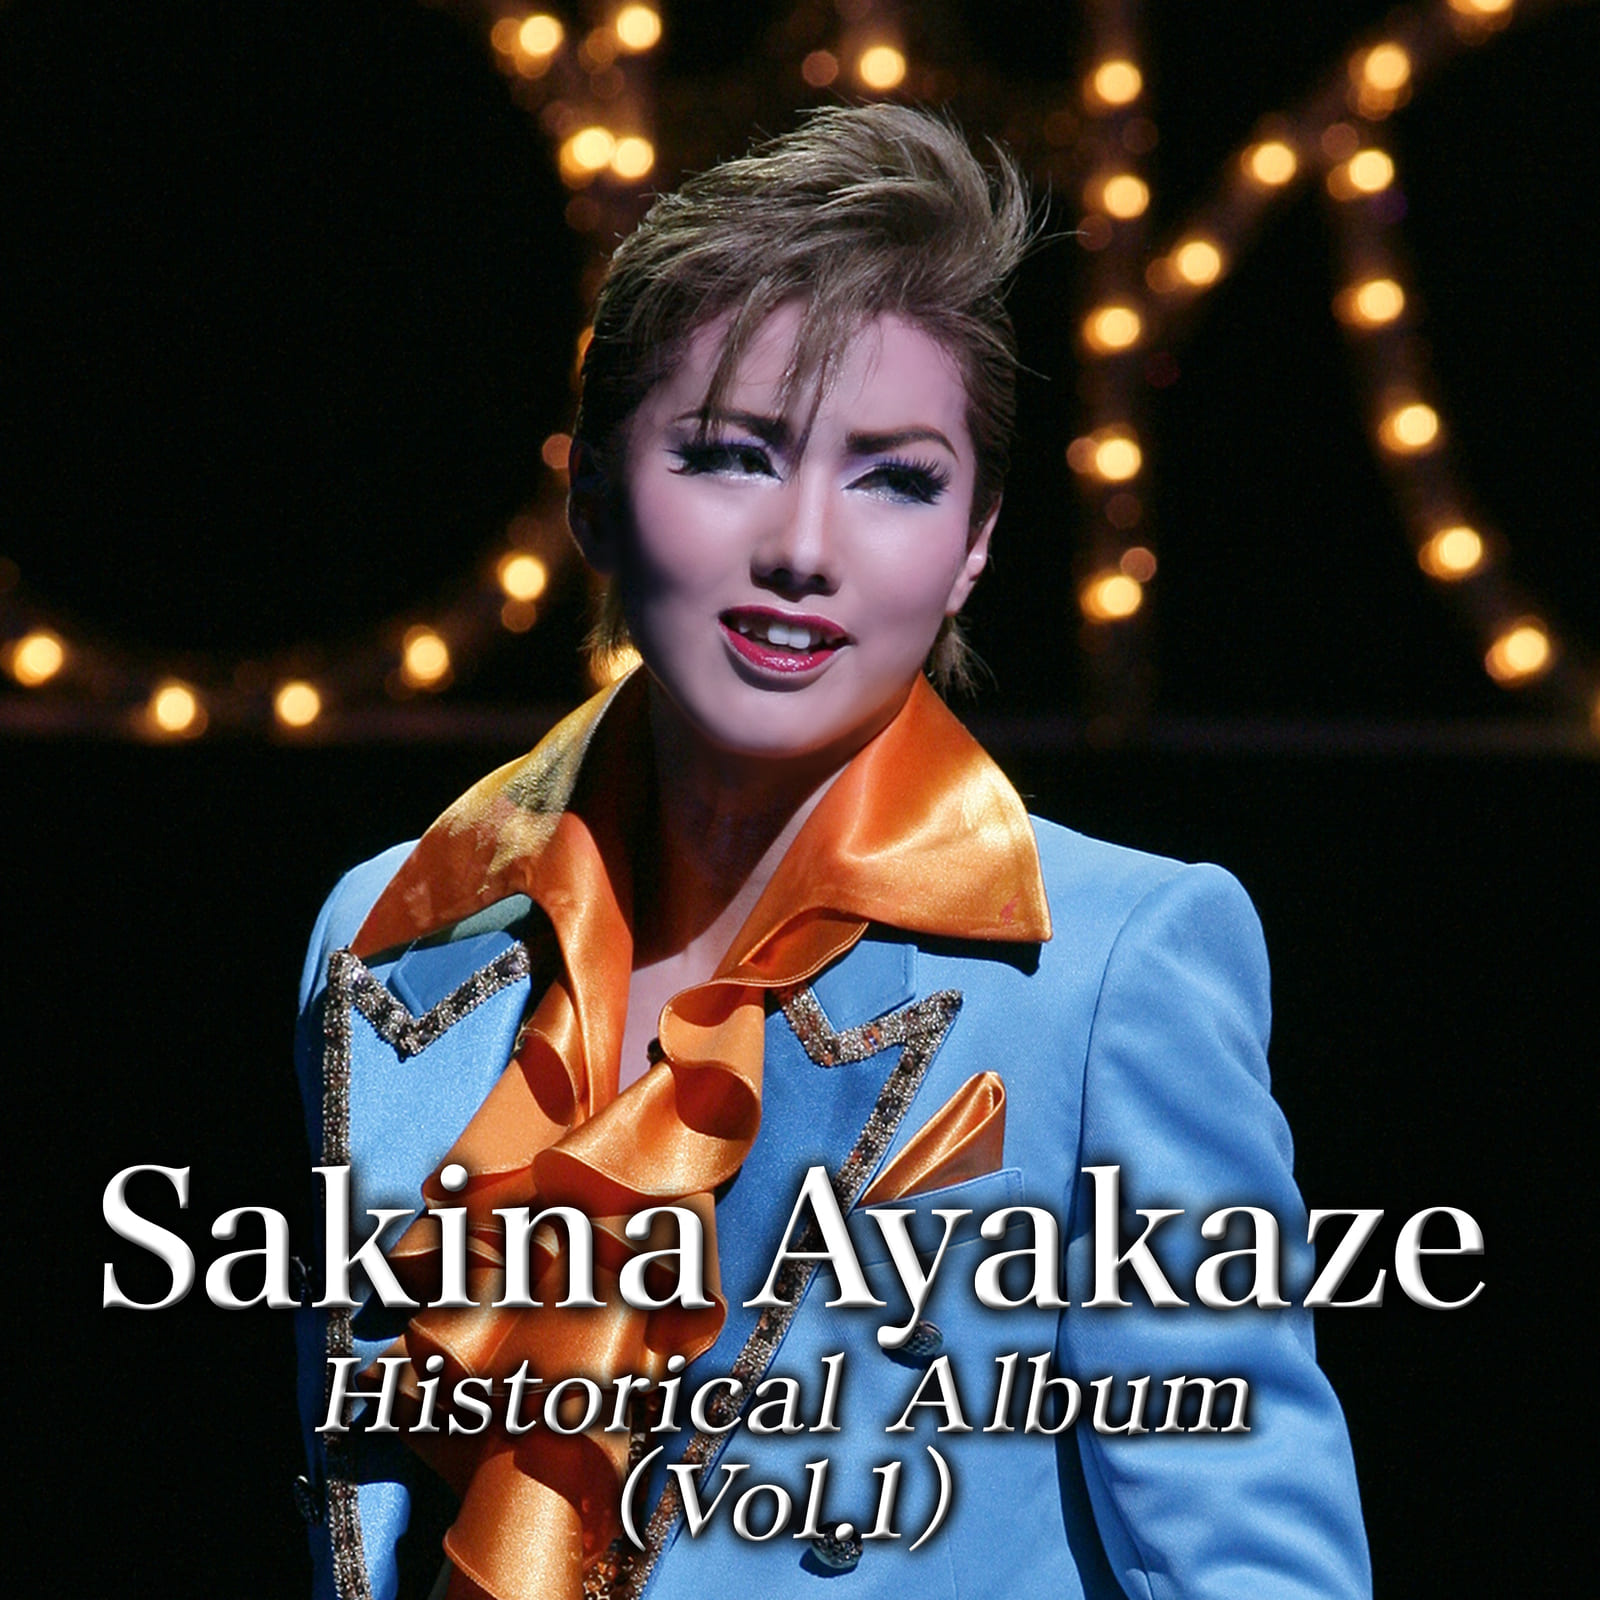 Sakina Ayakaze Historical Album Vol.1